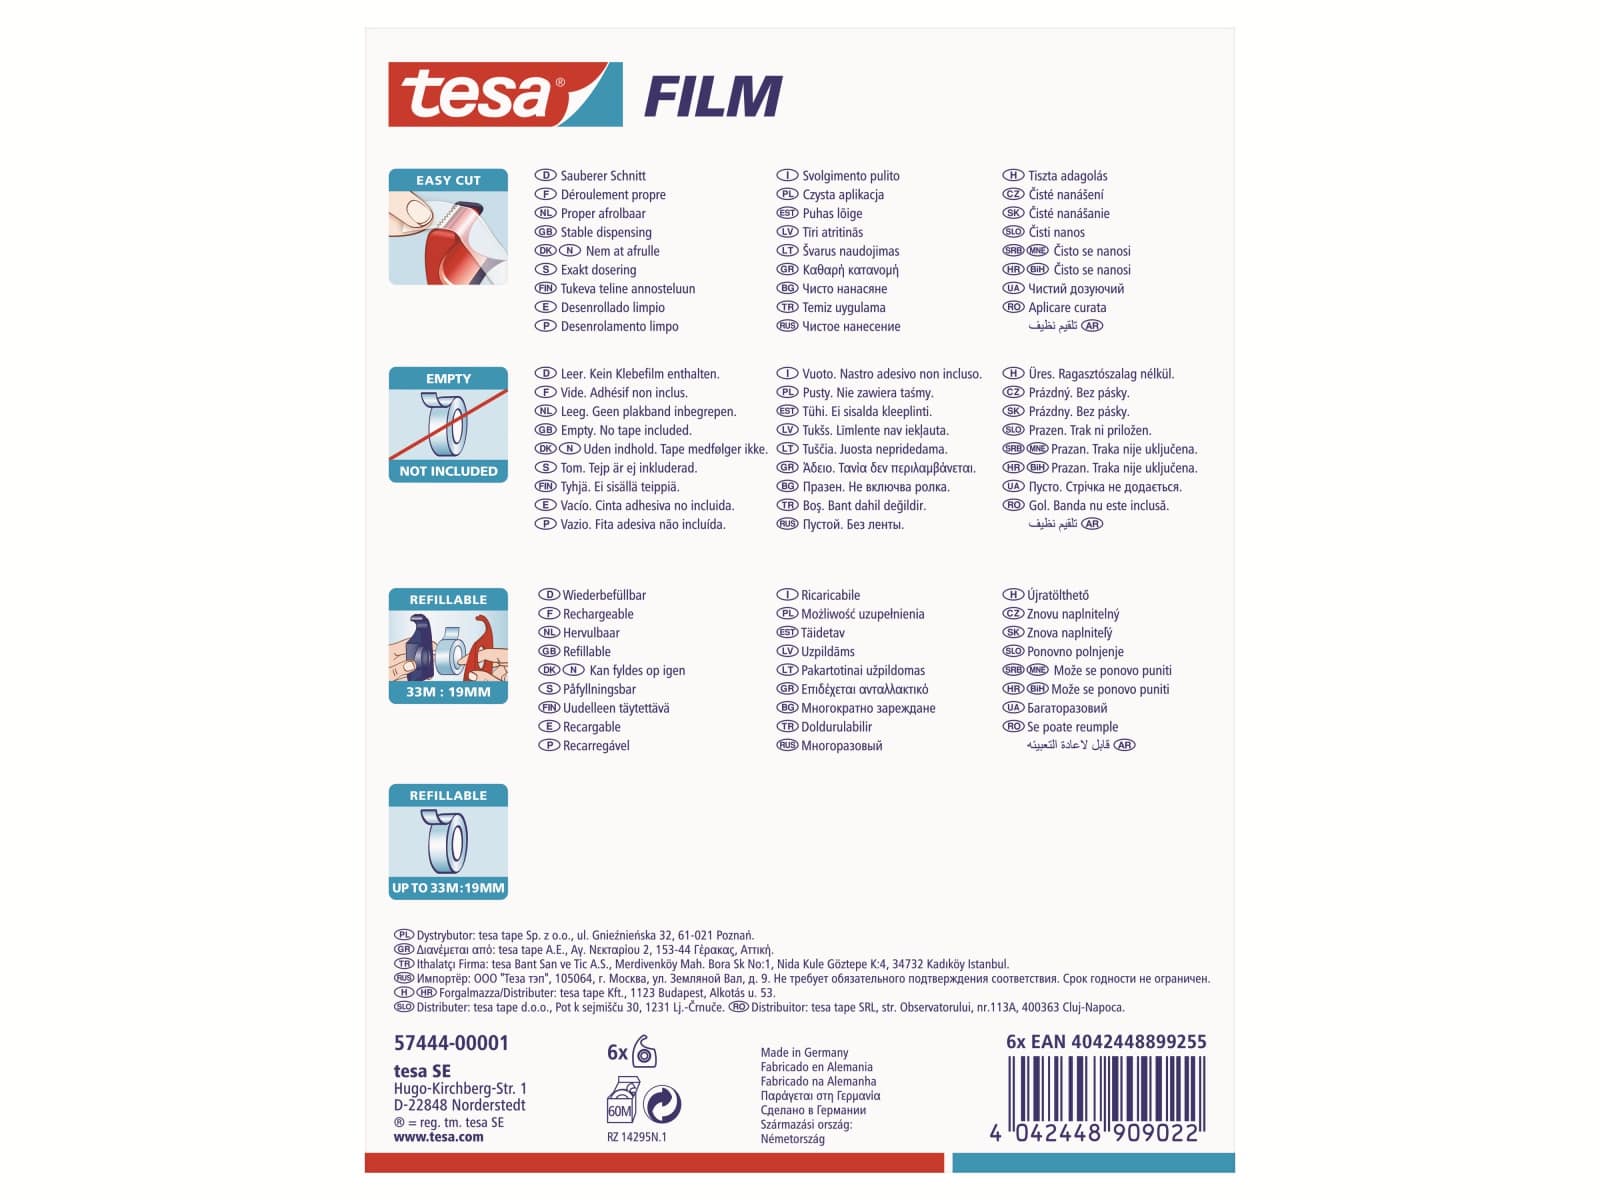 TESA ® Easy Cut Handabroller 33:19 rot-blau, leer, bis 33m:19mm, 57444-00001-01